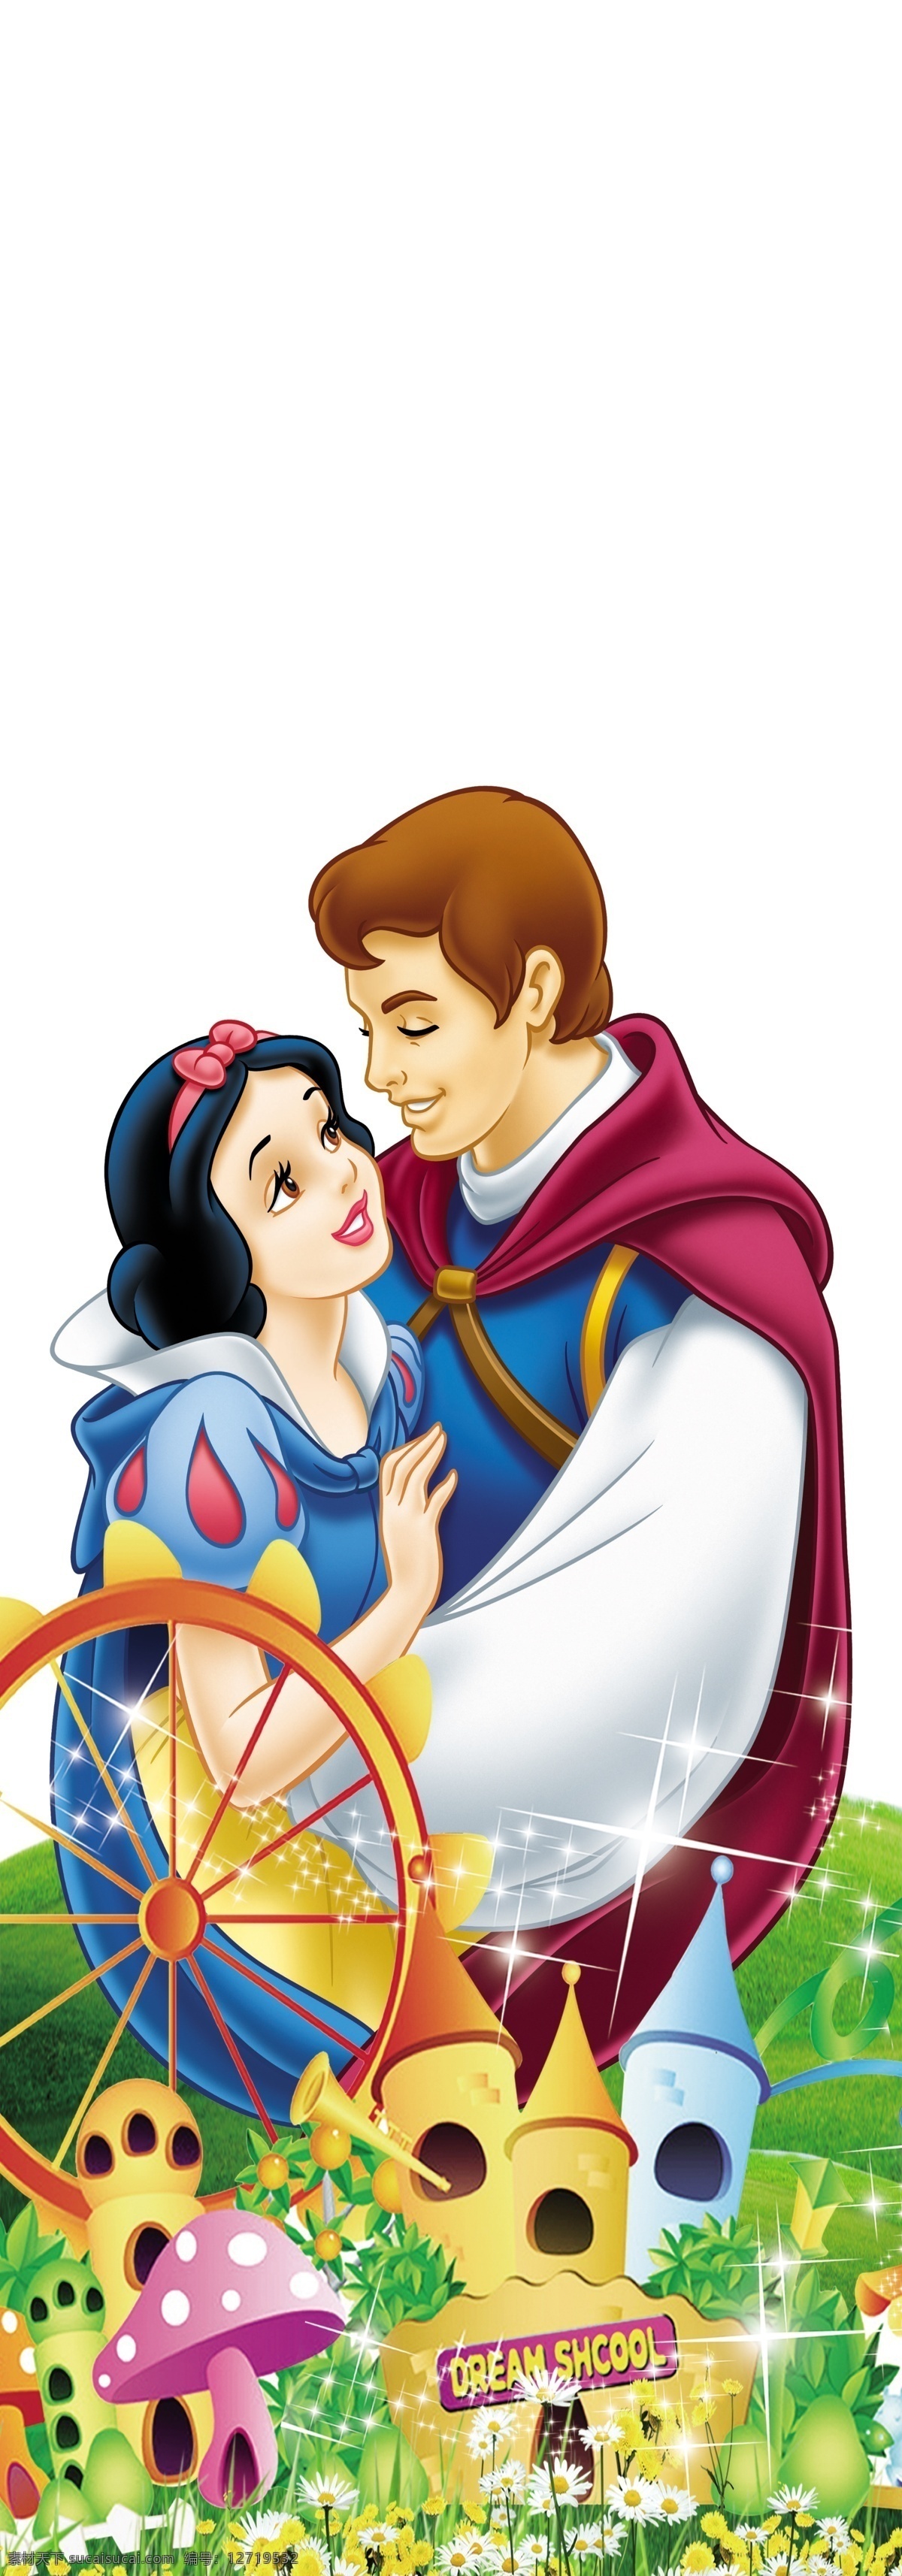 白雪公主 王子 城堡 风车 童话 卡通 梦幻 星星 草地 花儿 cs5 广告设计模板 源文件